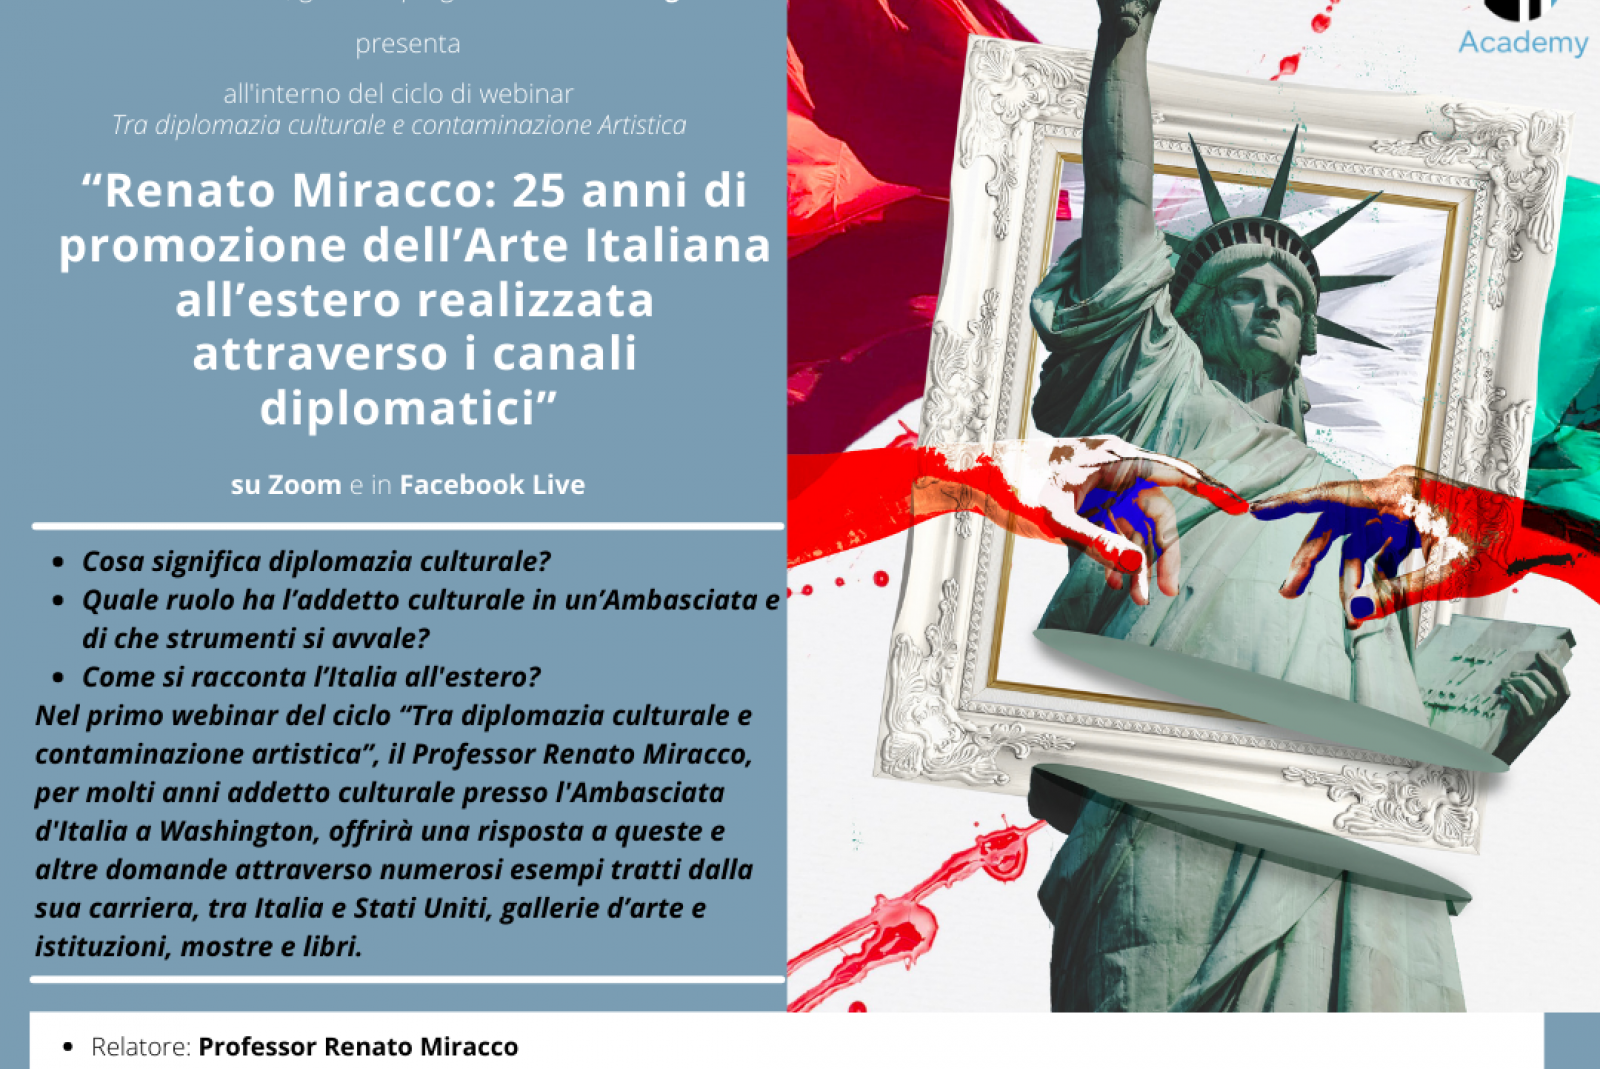 Renato Miracco: 25 anni di promozione dell’Arte Italiana all’estero realizzata attraverso i canali diplomatici - 18 marzo 2021